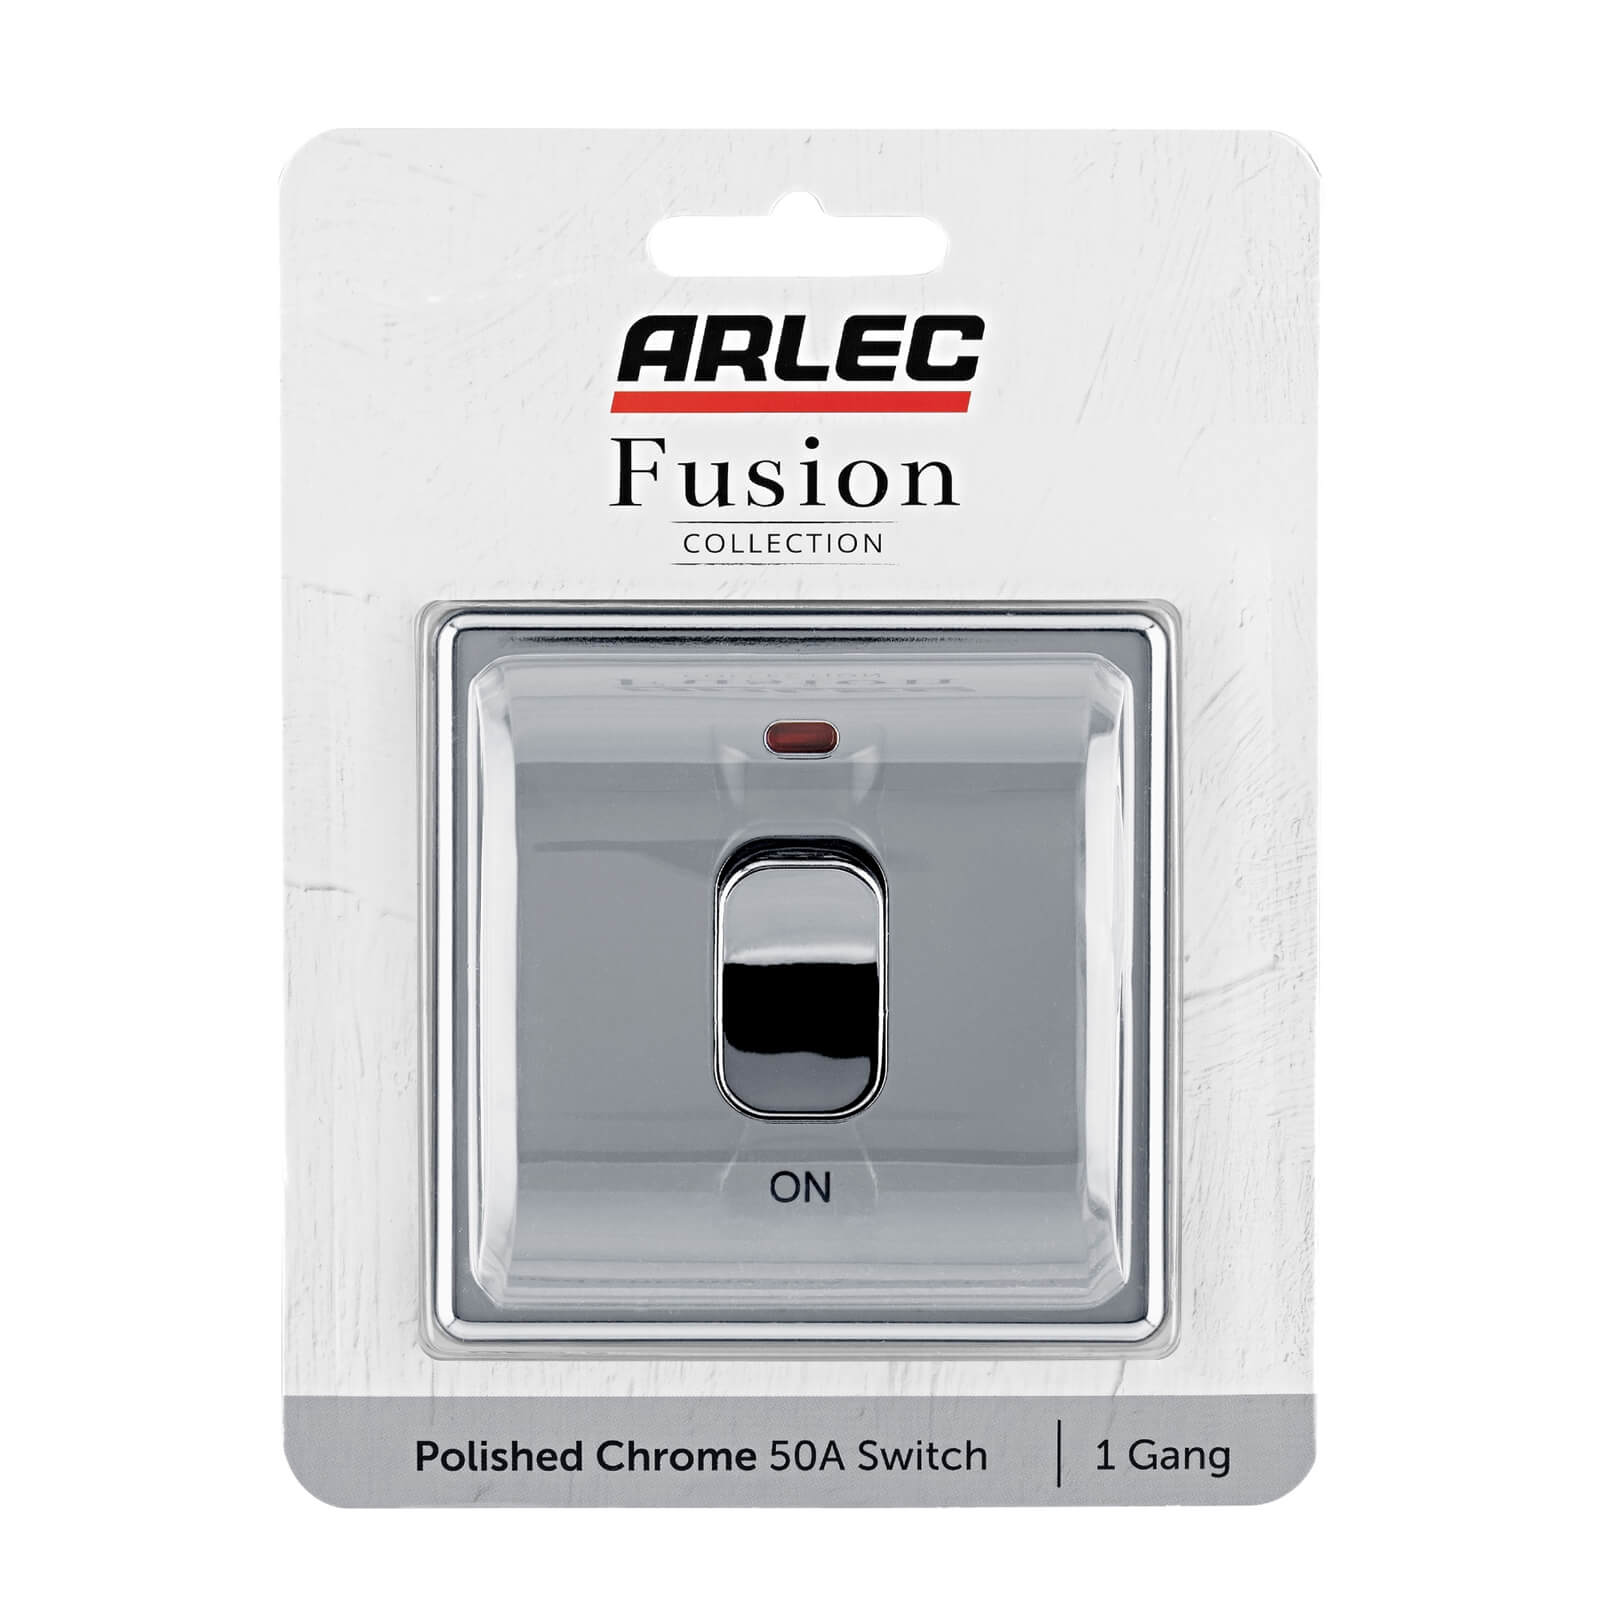 Arlec Fusion 50A 1Gang Double pole Polished Chrome Single Switch